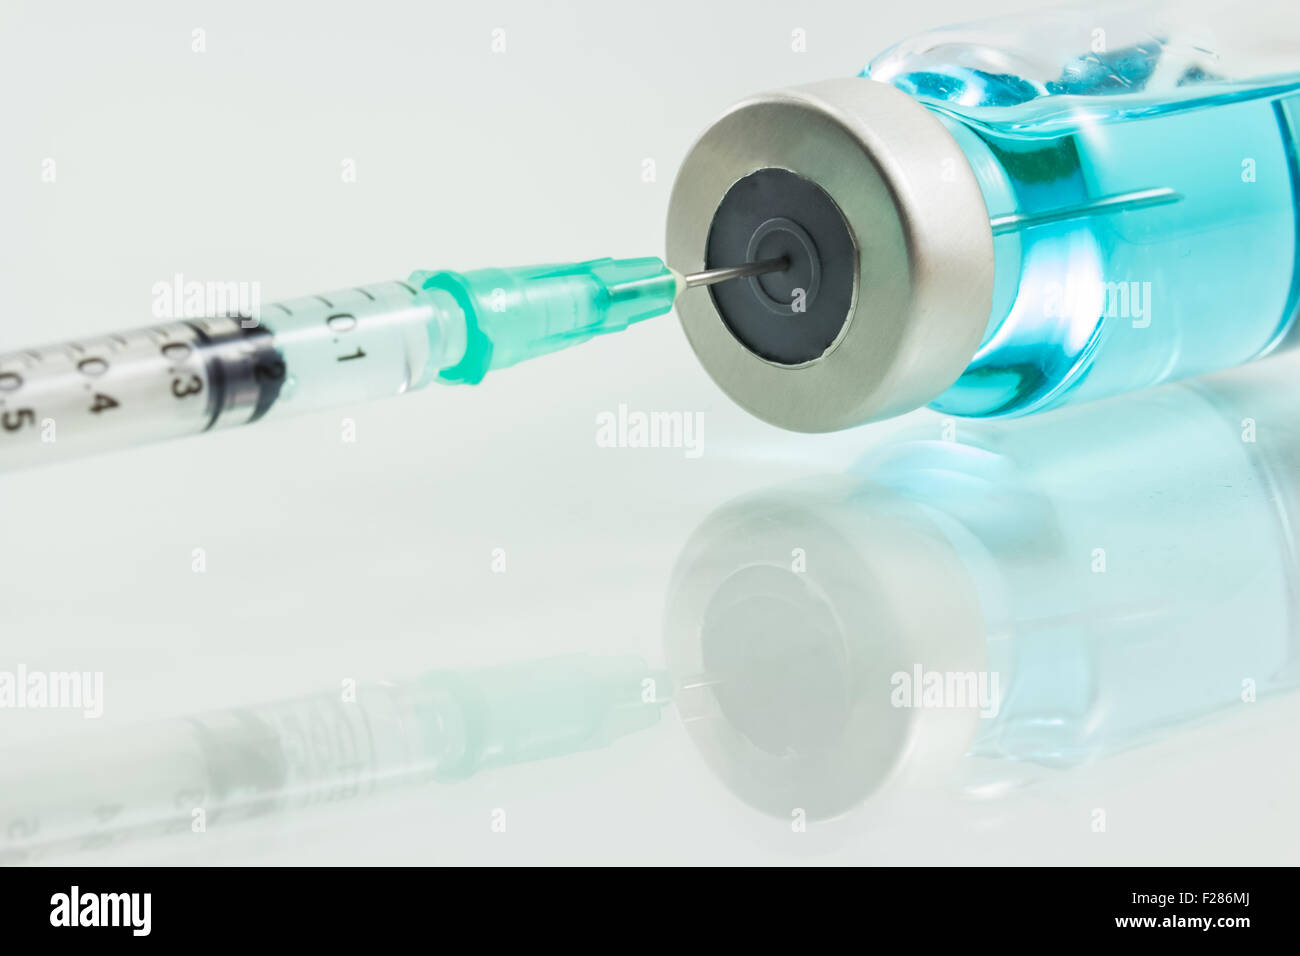 medical syringe and medicine  isolated on white background Stock Photo